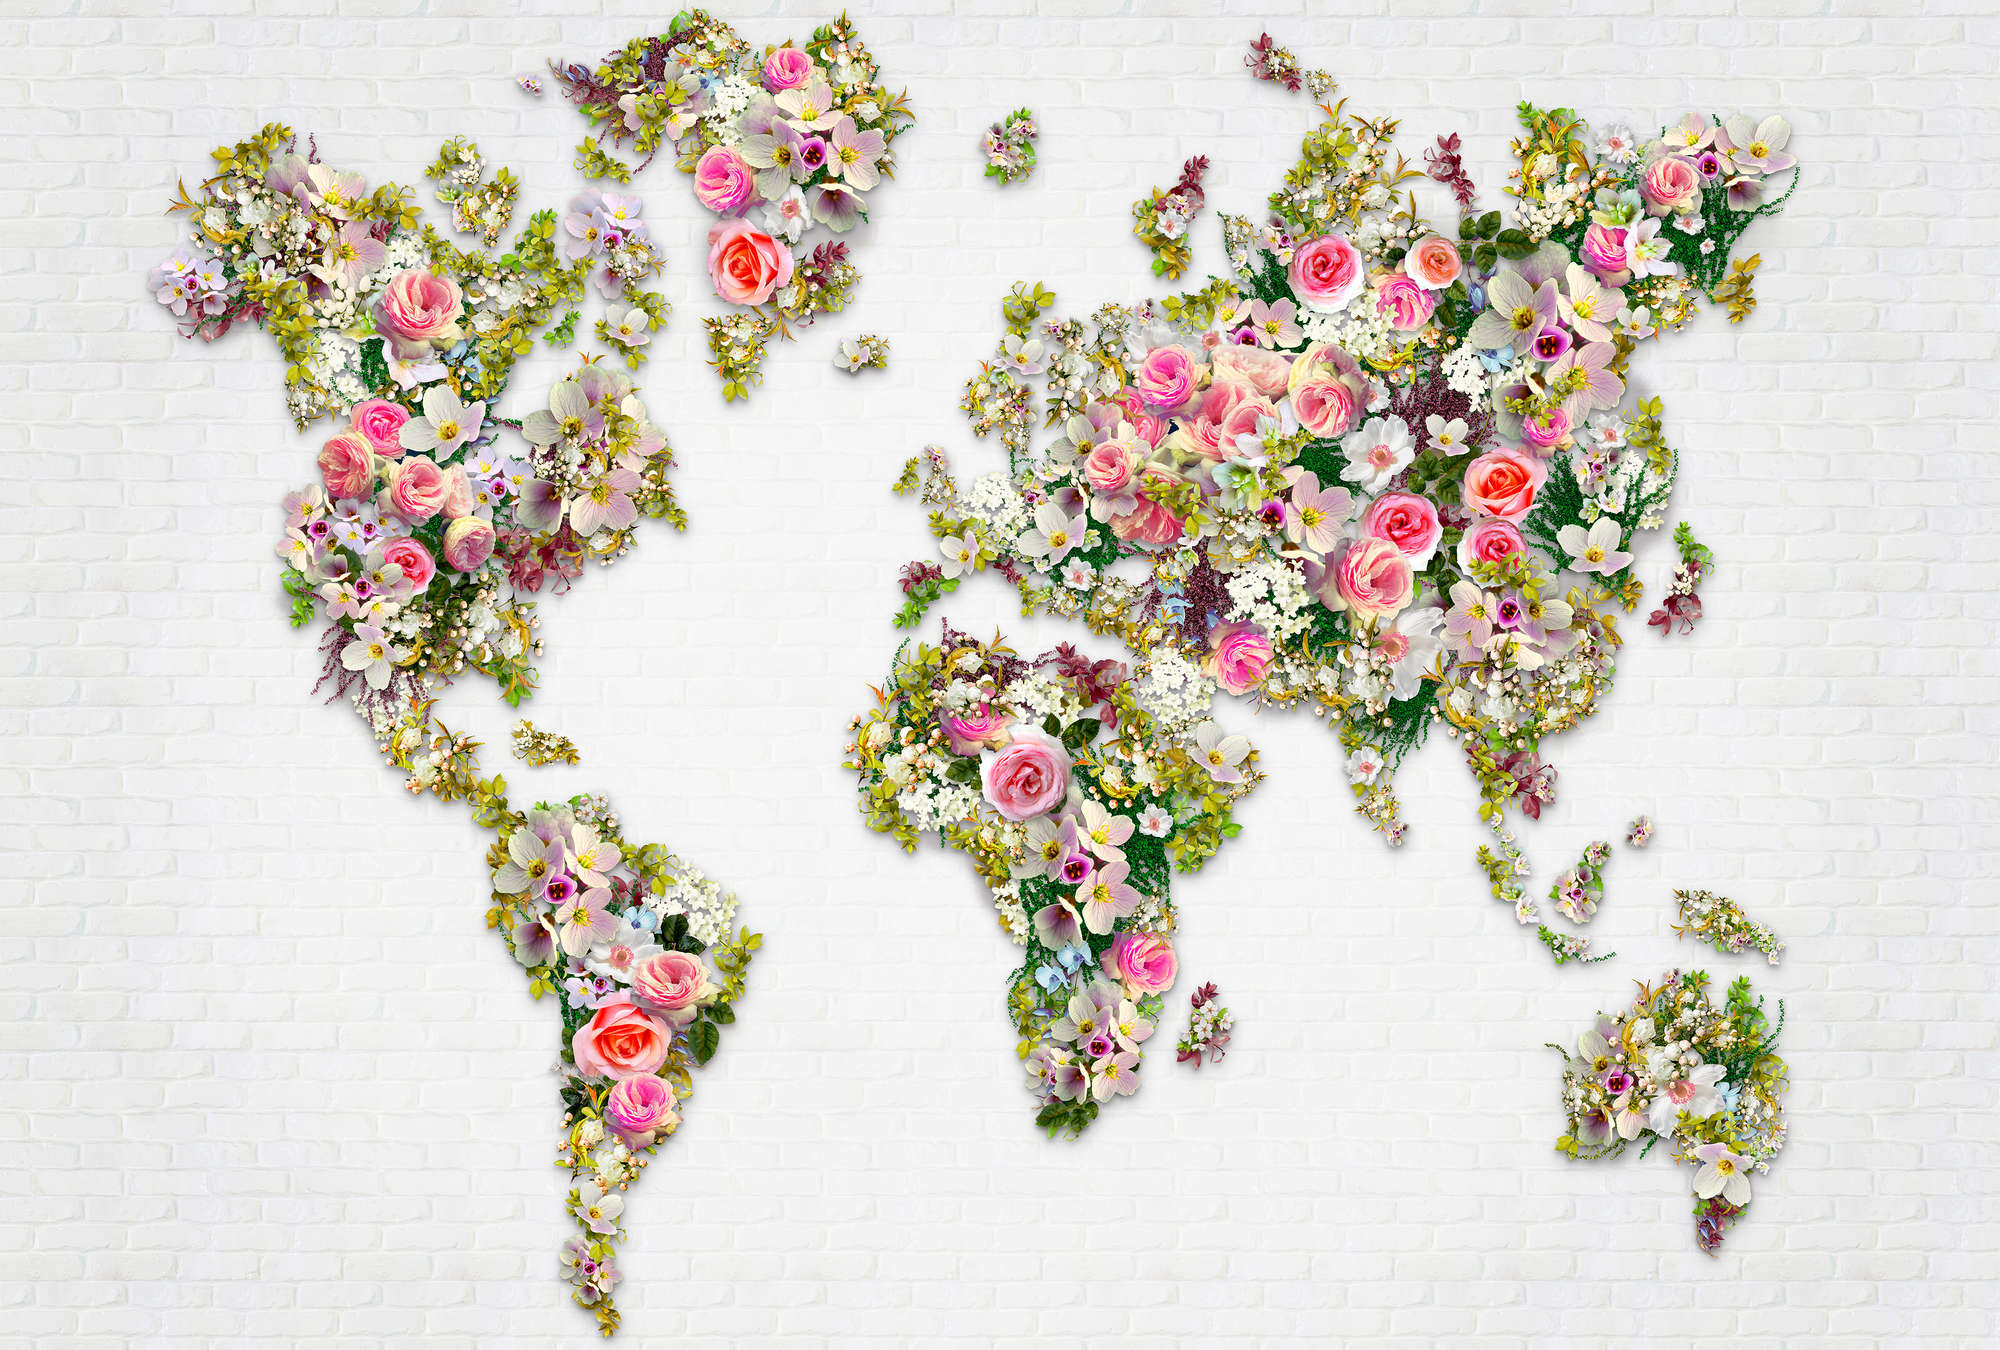             Fototapete Rosen & Blüten als Weltkarte auf weißer Wand
        